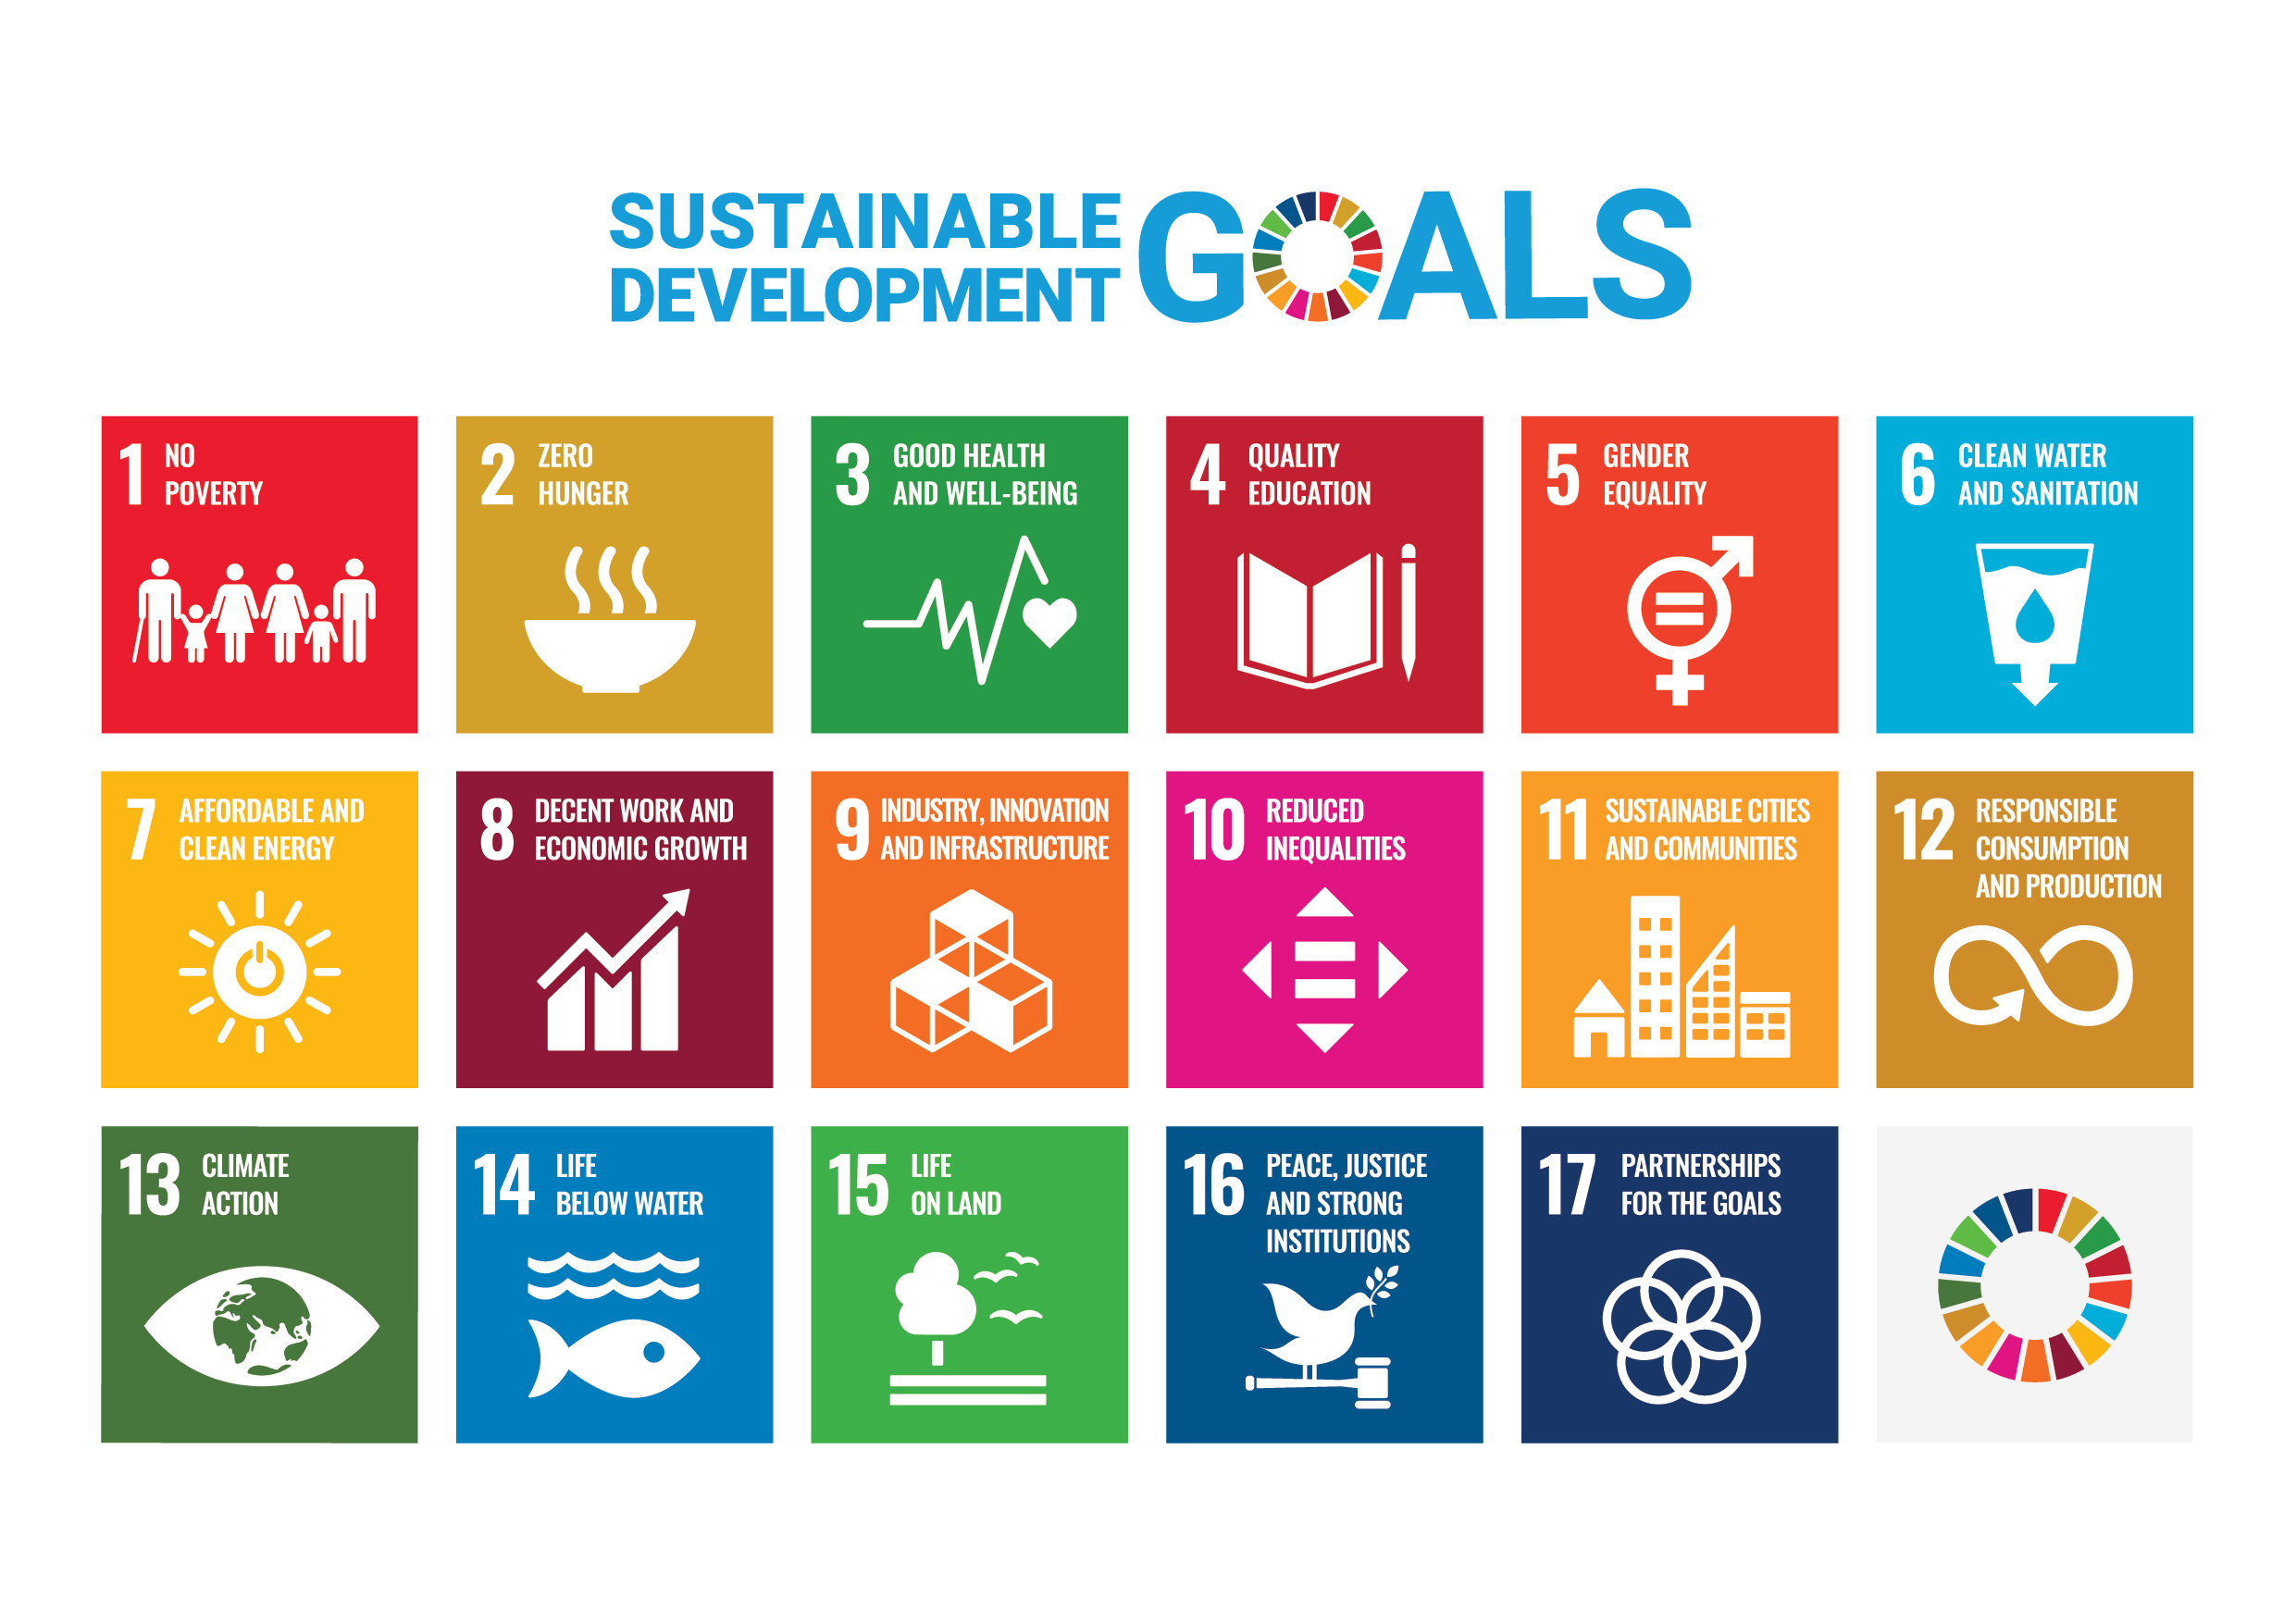 Sustainable development goals banner